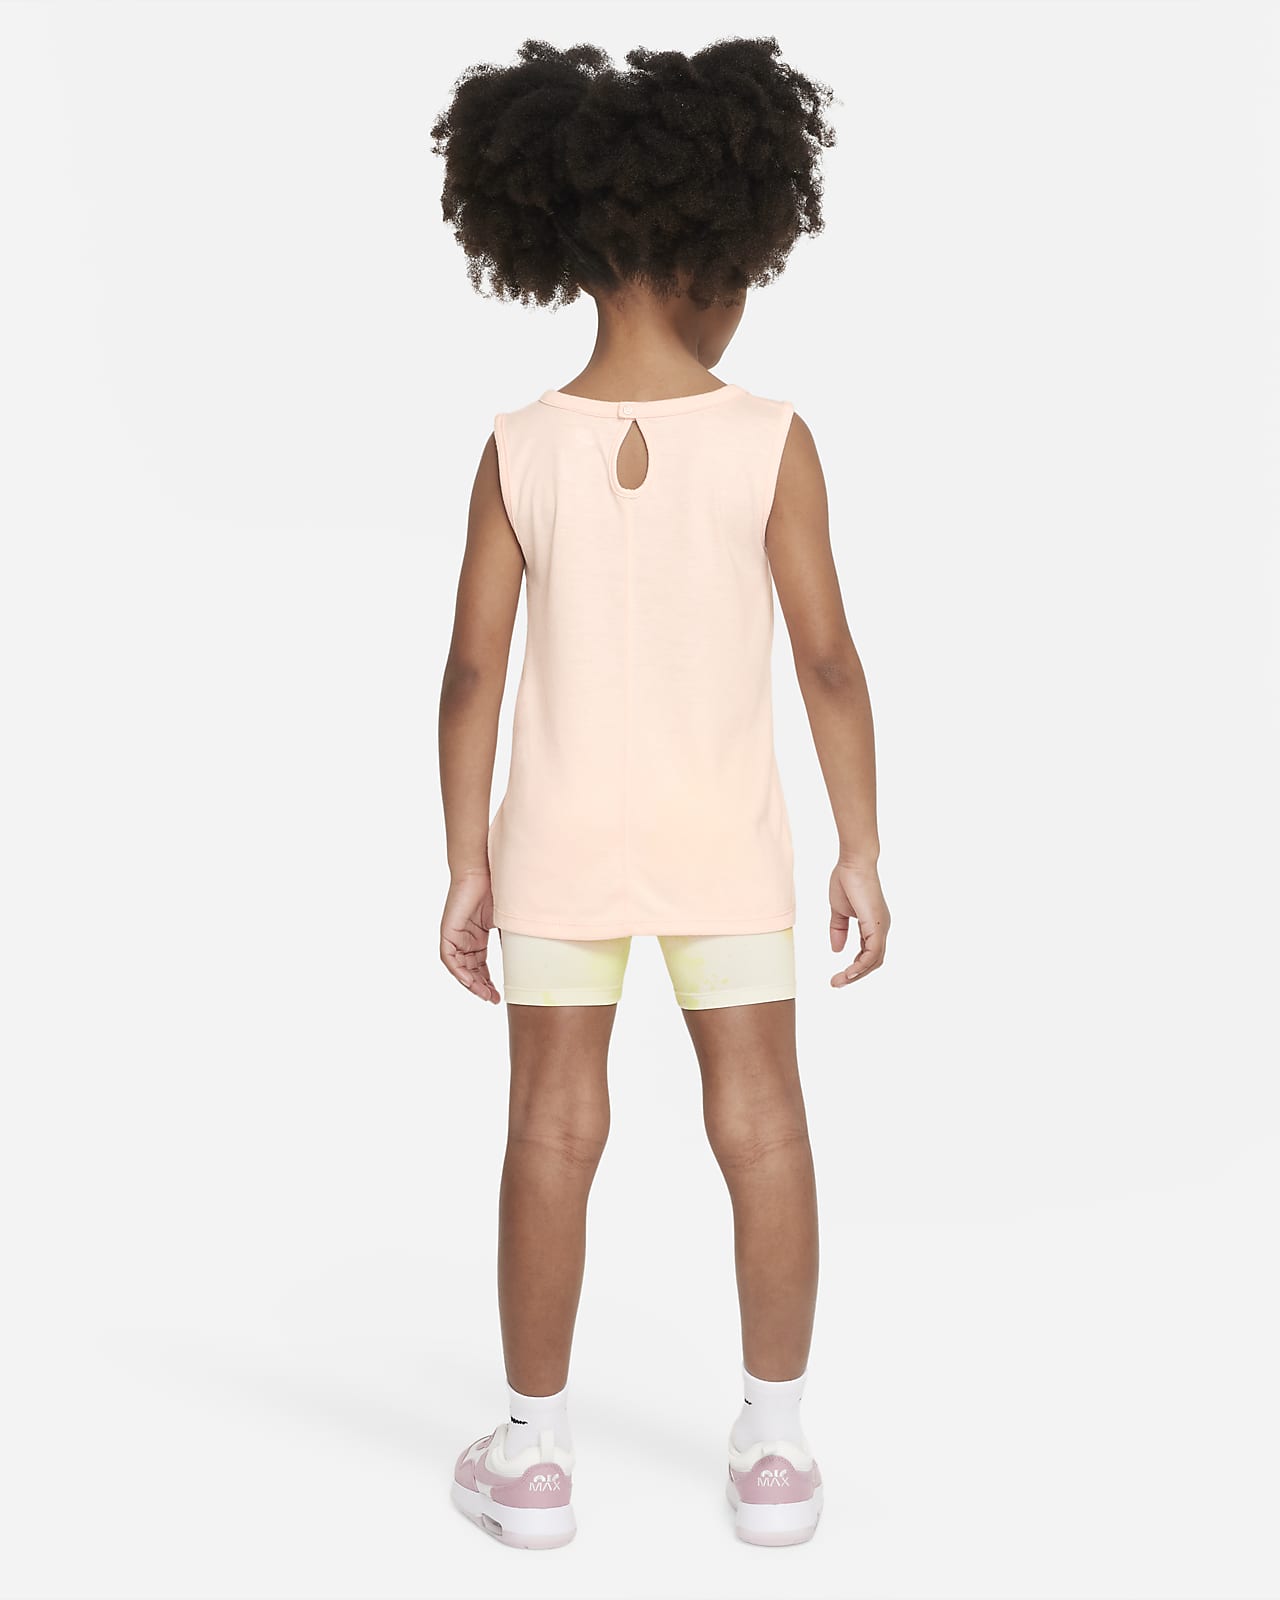 Nike 2 Piece Shorts Set Infant Boys